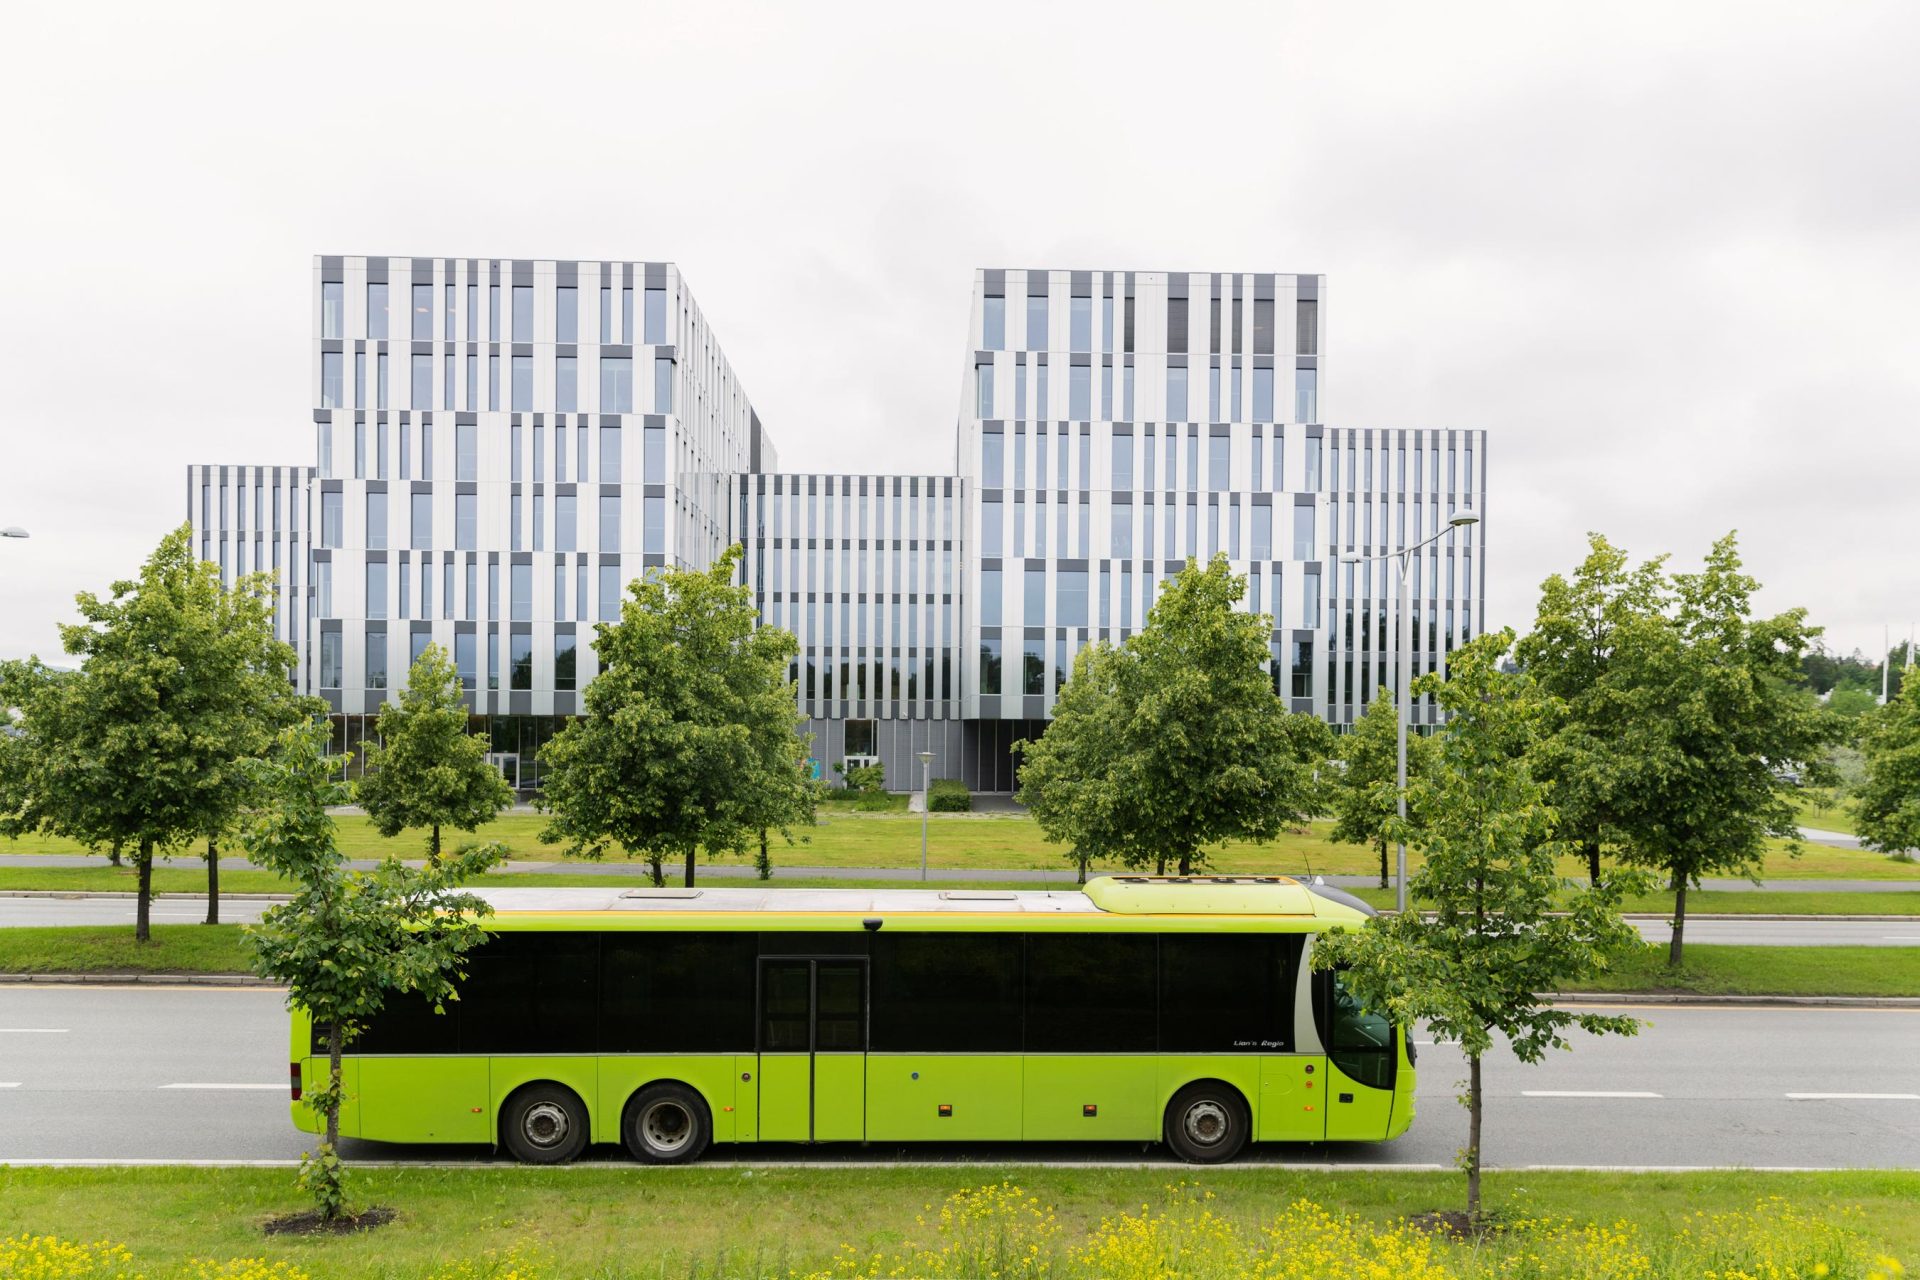 Moderne kontorbygg med symmetrisk design og vertikale aksenter bak en knallgrønn buss på en byvei omkranset av trær.